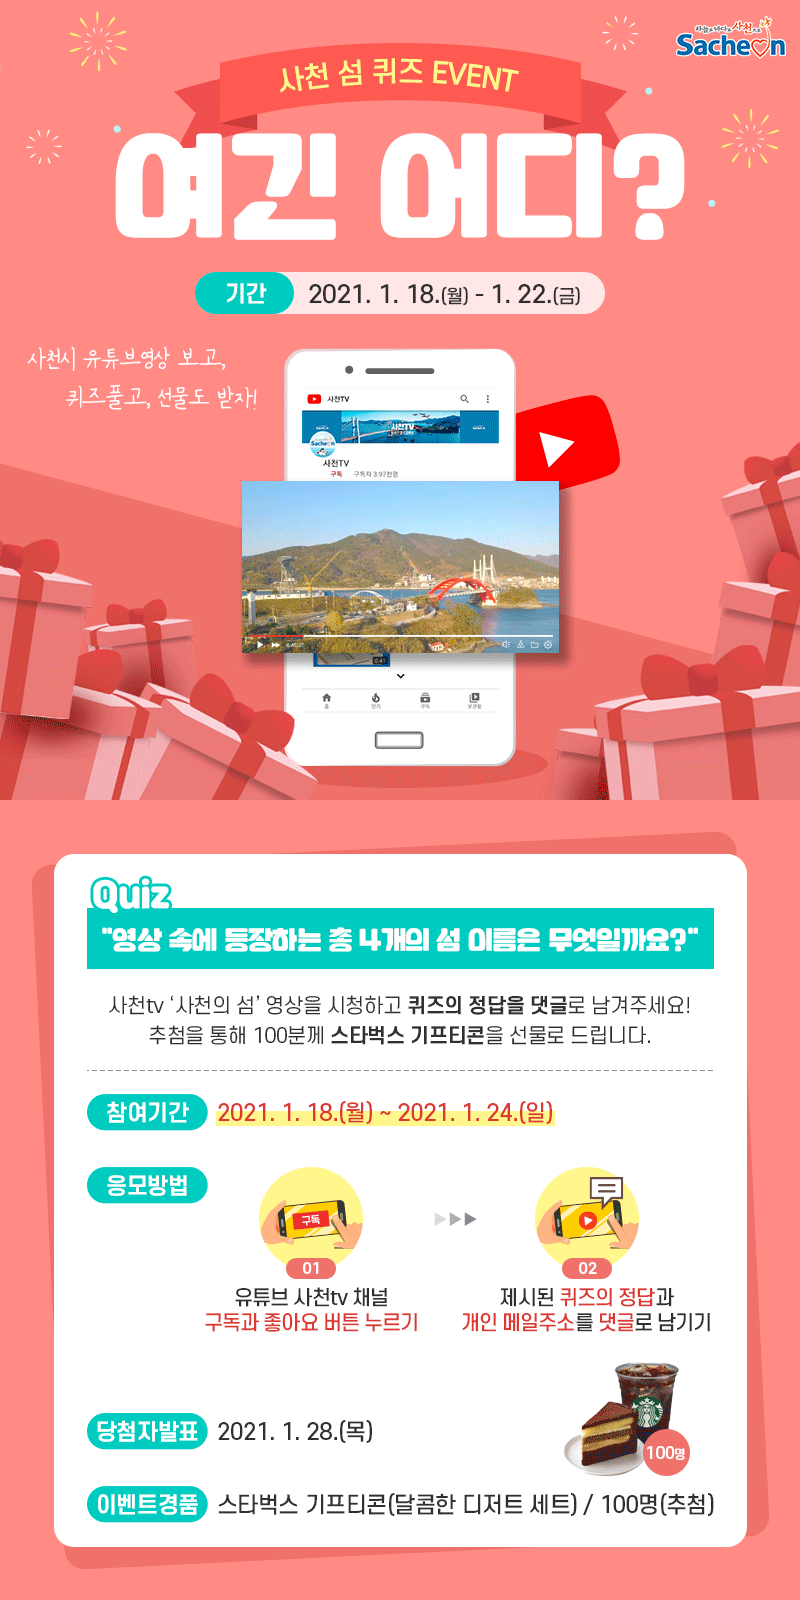 자매도시 경남 사천시 공식 유튜브 사천TV 새해 이벤트